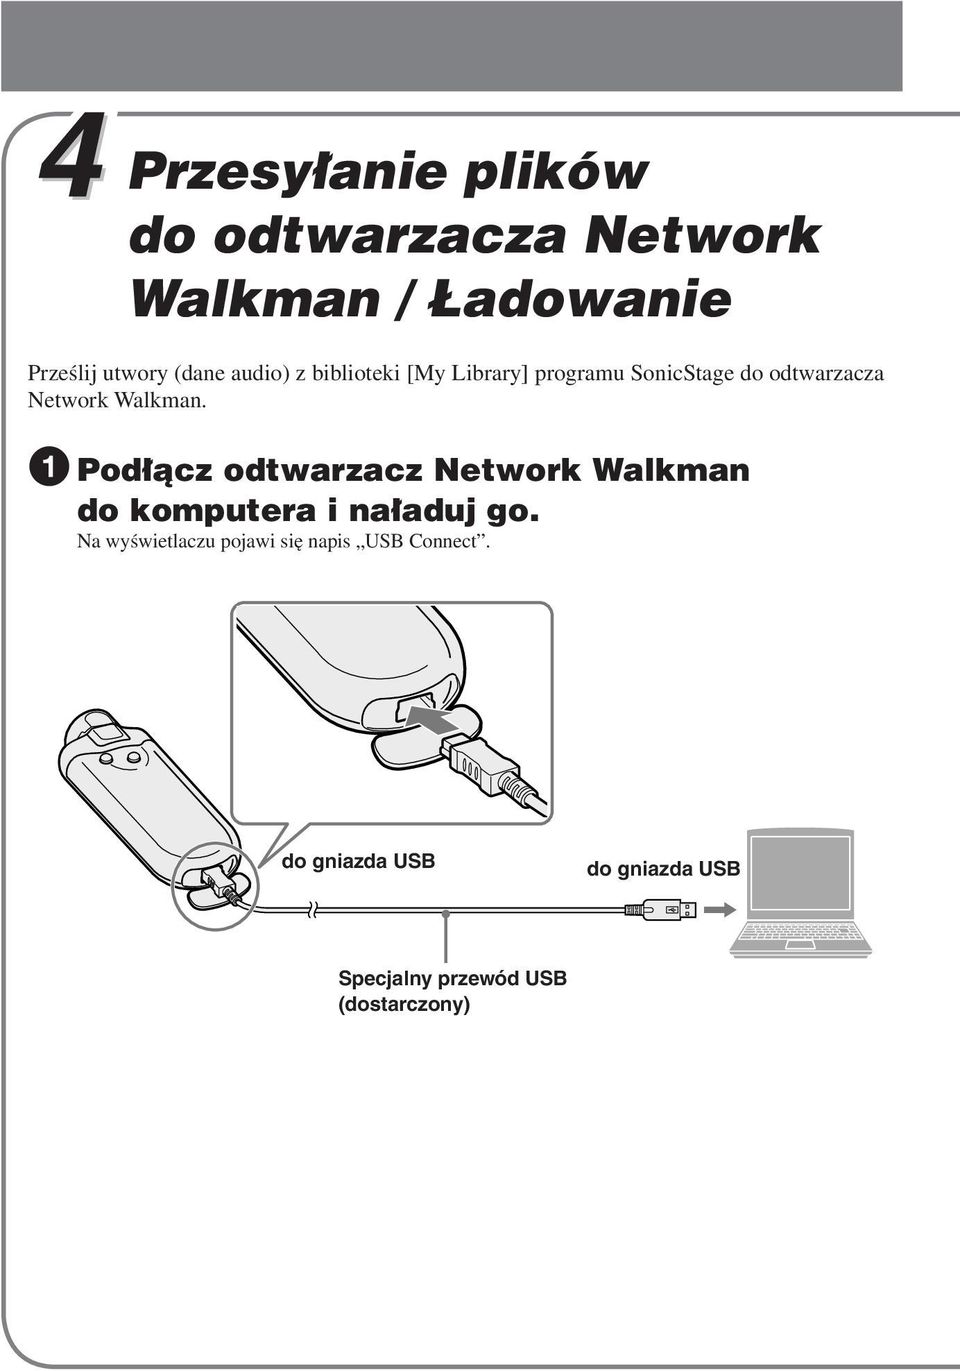 1 Podłącz odtwarzacz Network Walkman do komputera i naładuj go.